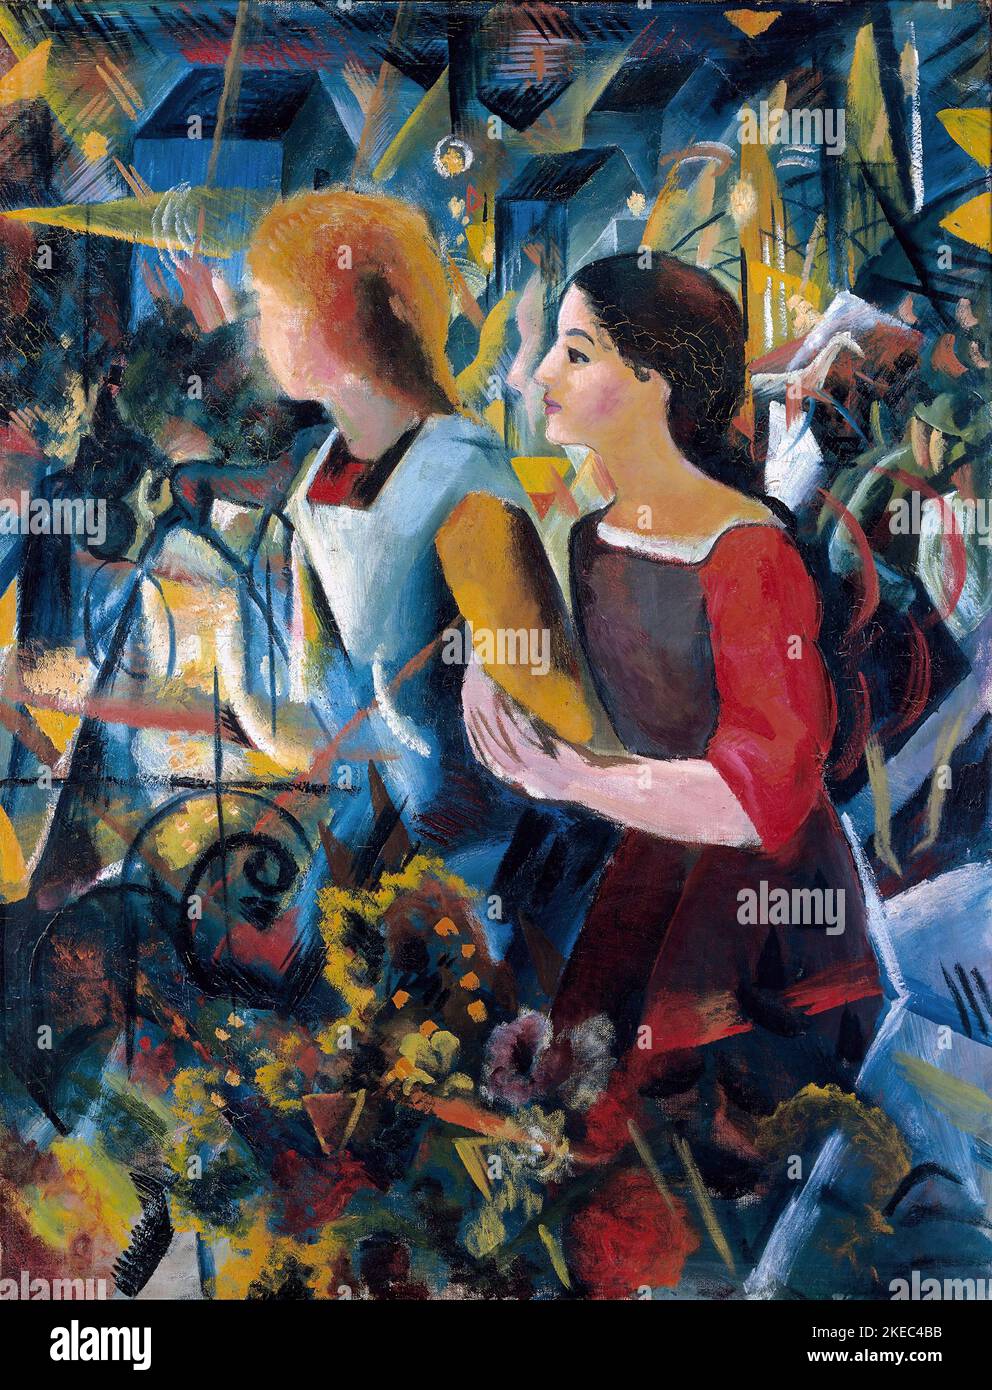 Deux filles par le peintre expressionniste allemand, August Macke (1887-1914), huile sur toile, 1913 Banque D'Images